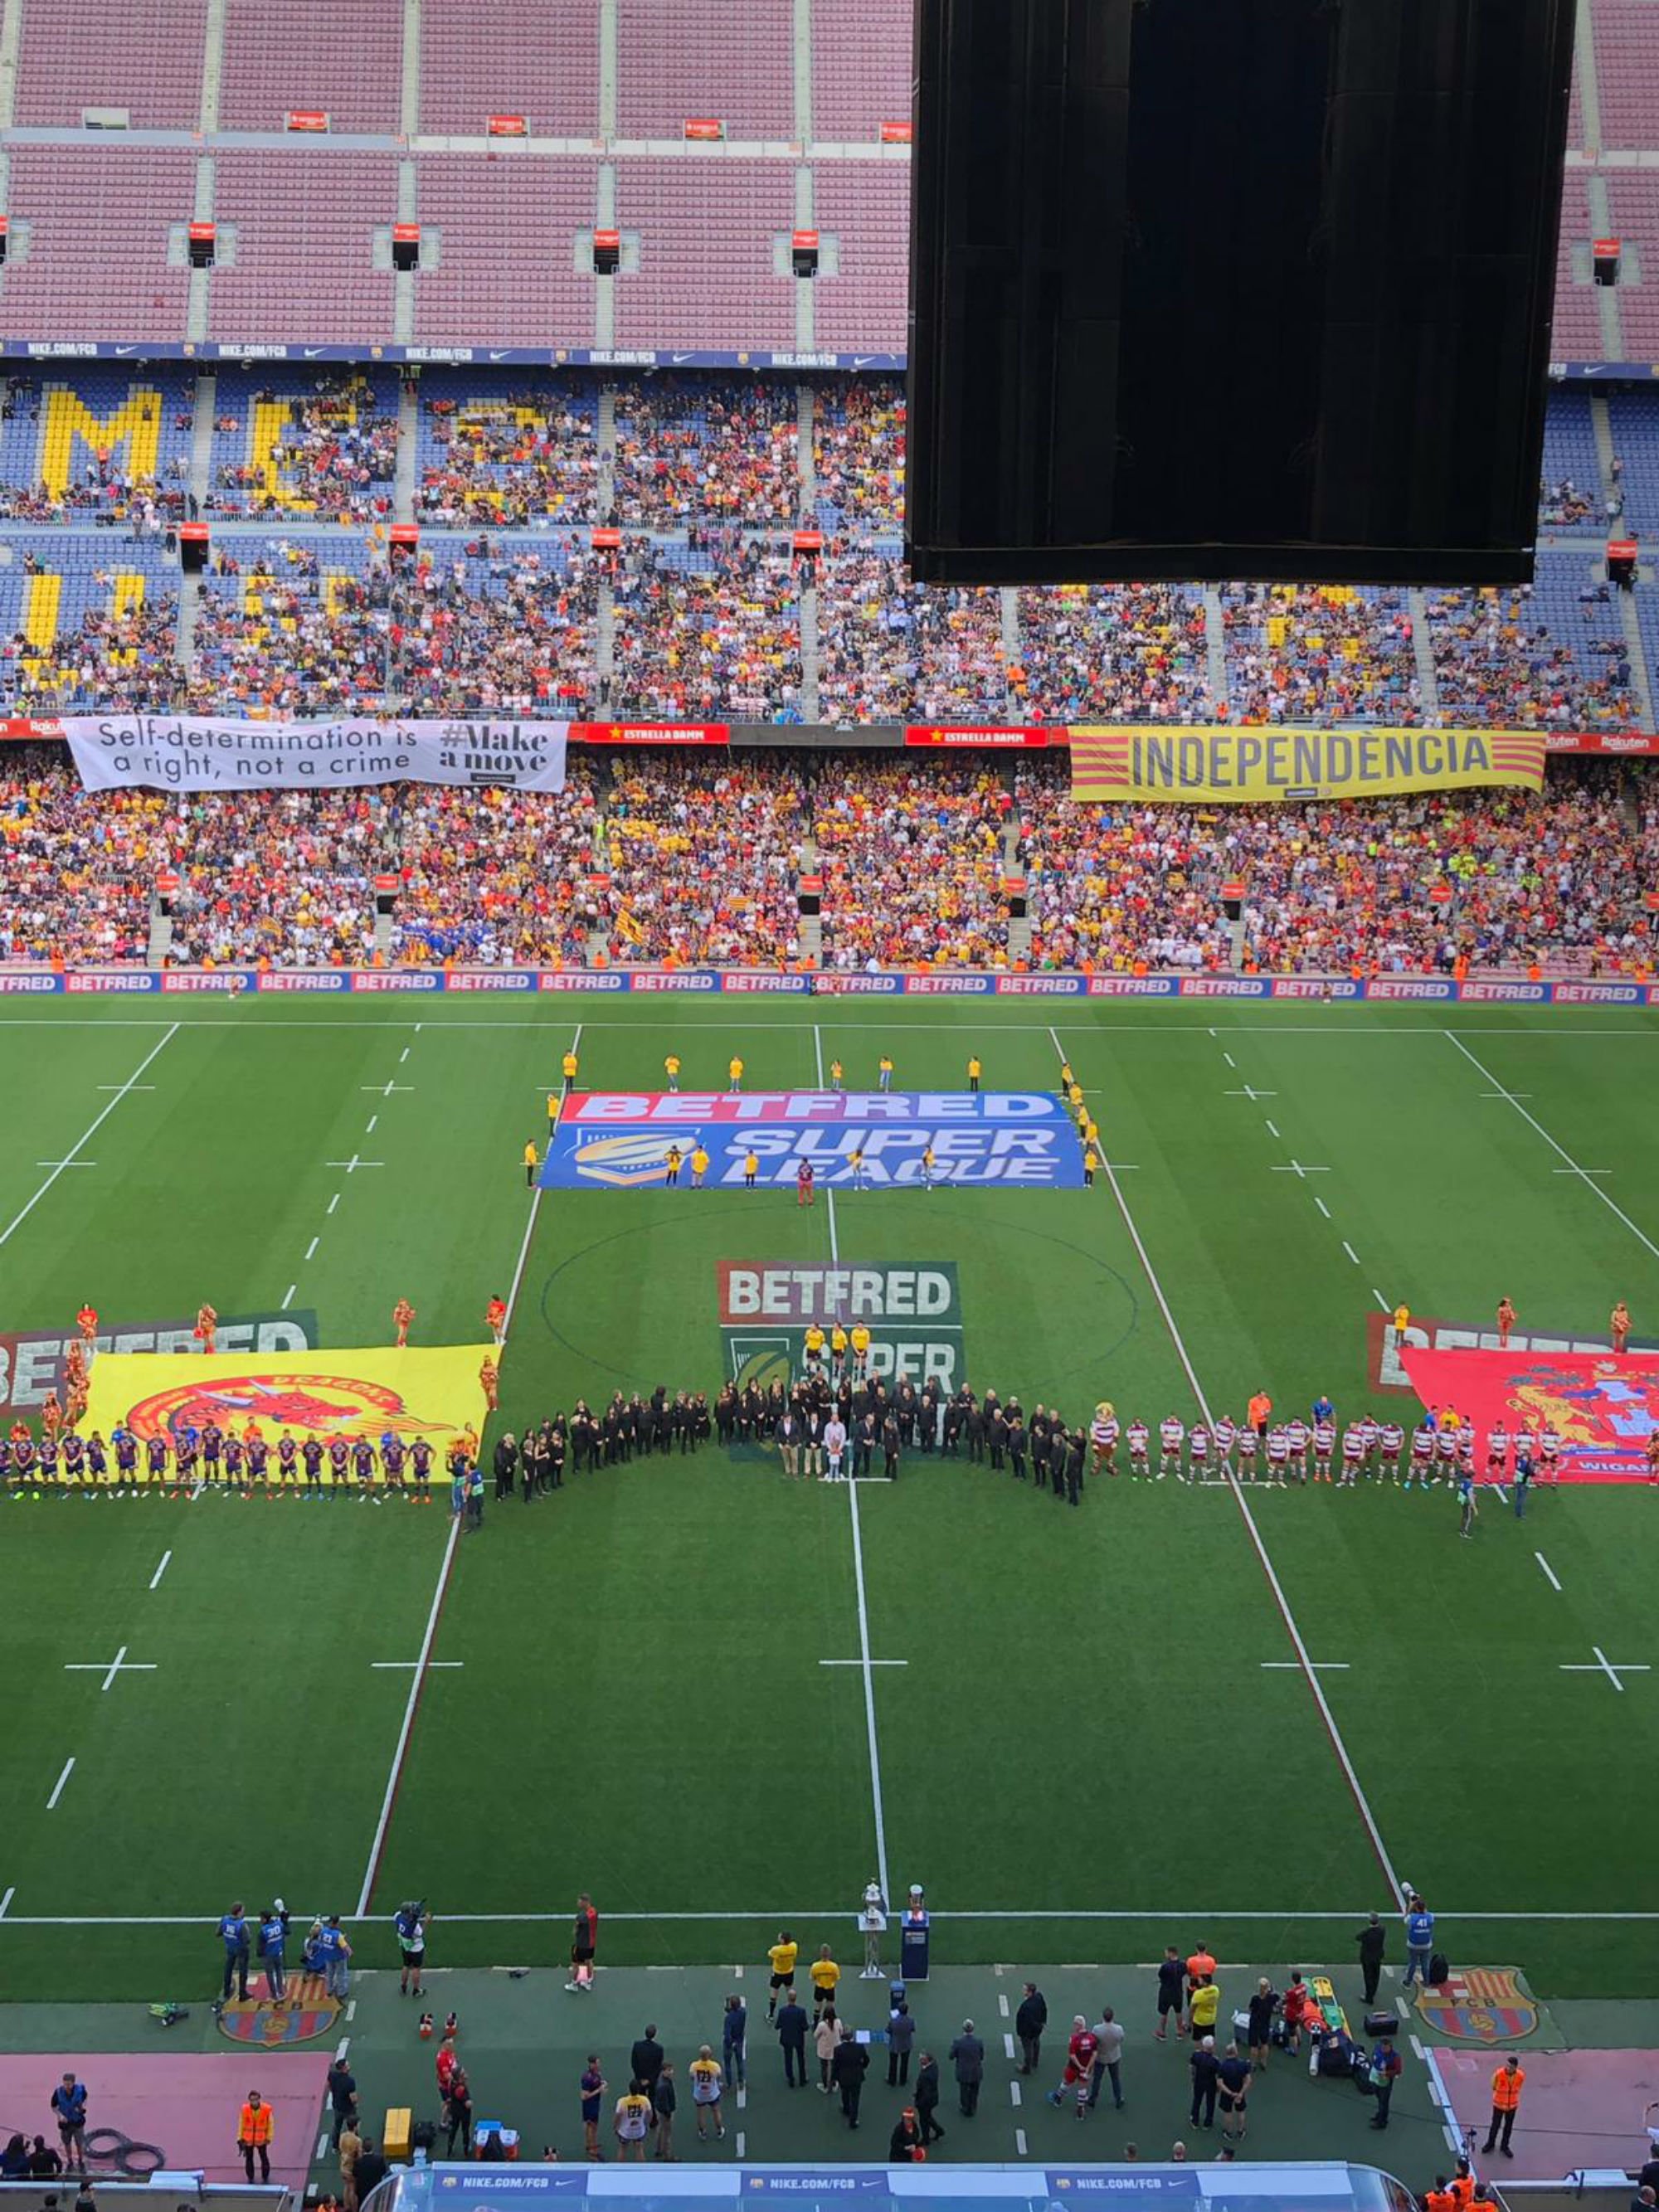 La independencia de Catalunya, protagonista en el Camp Nou con motivo del Dragons Catalans-Wigan